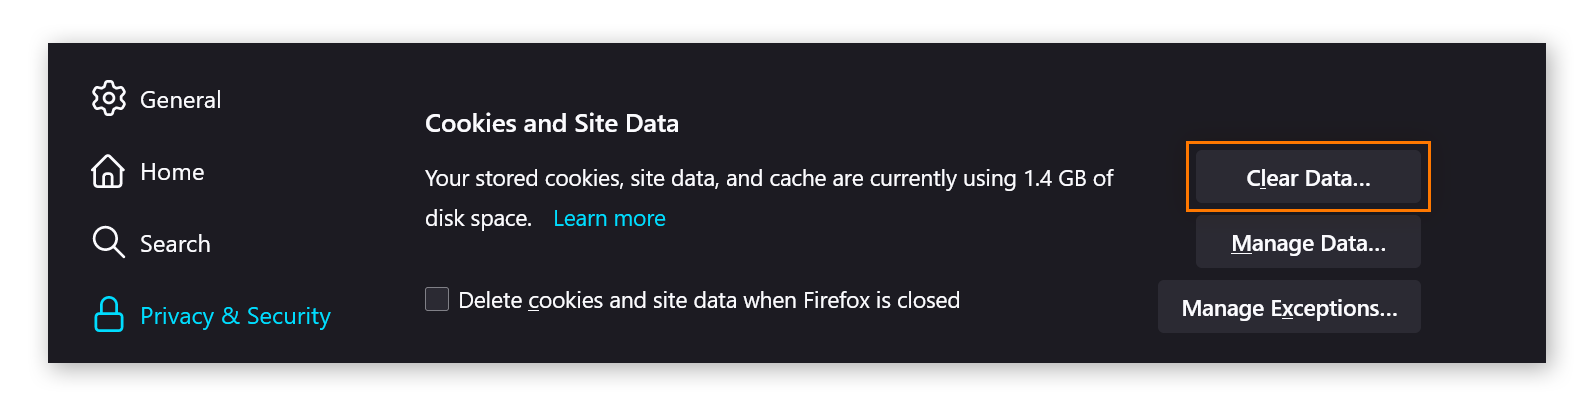 Uma ilustração das configurações de Privacidade e segurança no Firefox, exibindo a seção Cookies e dados de sites. O botão "Limpar dados" está marcado.